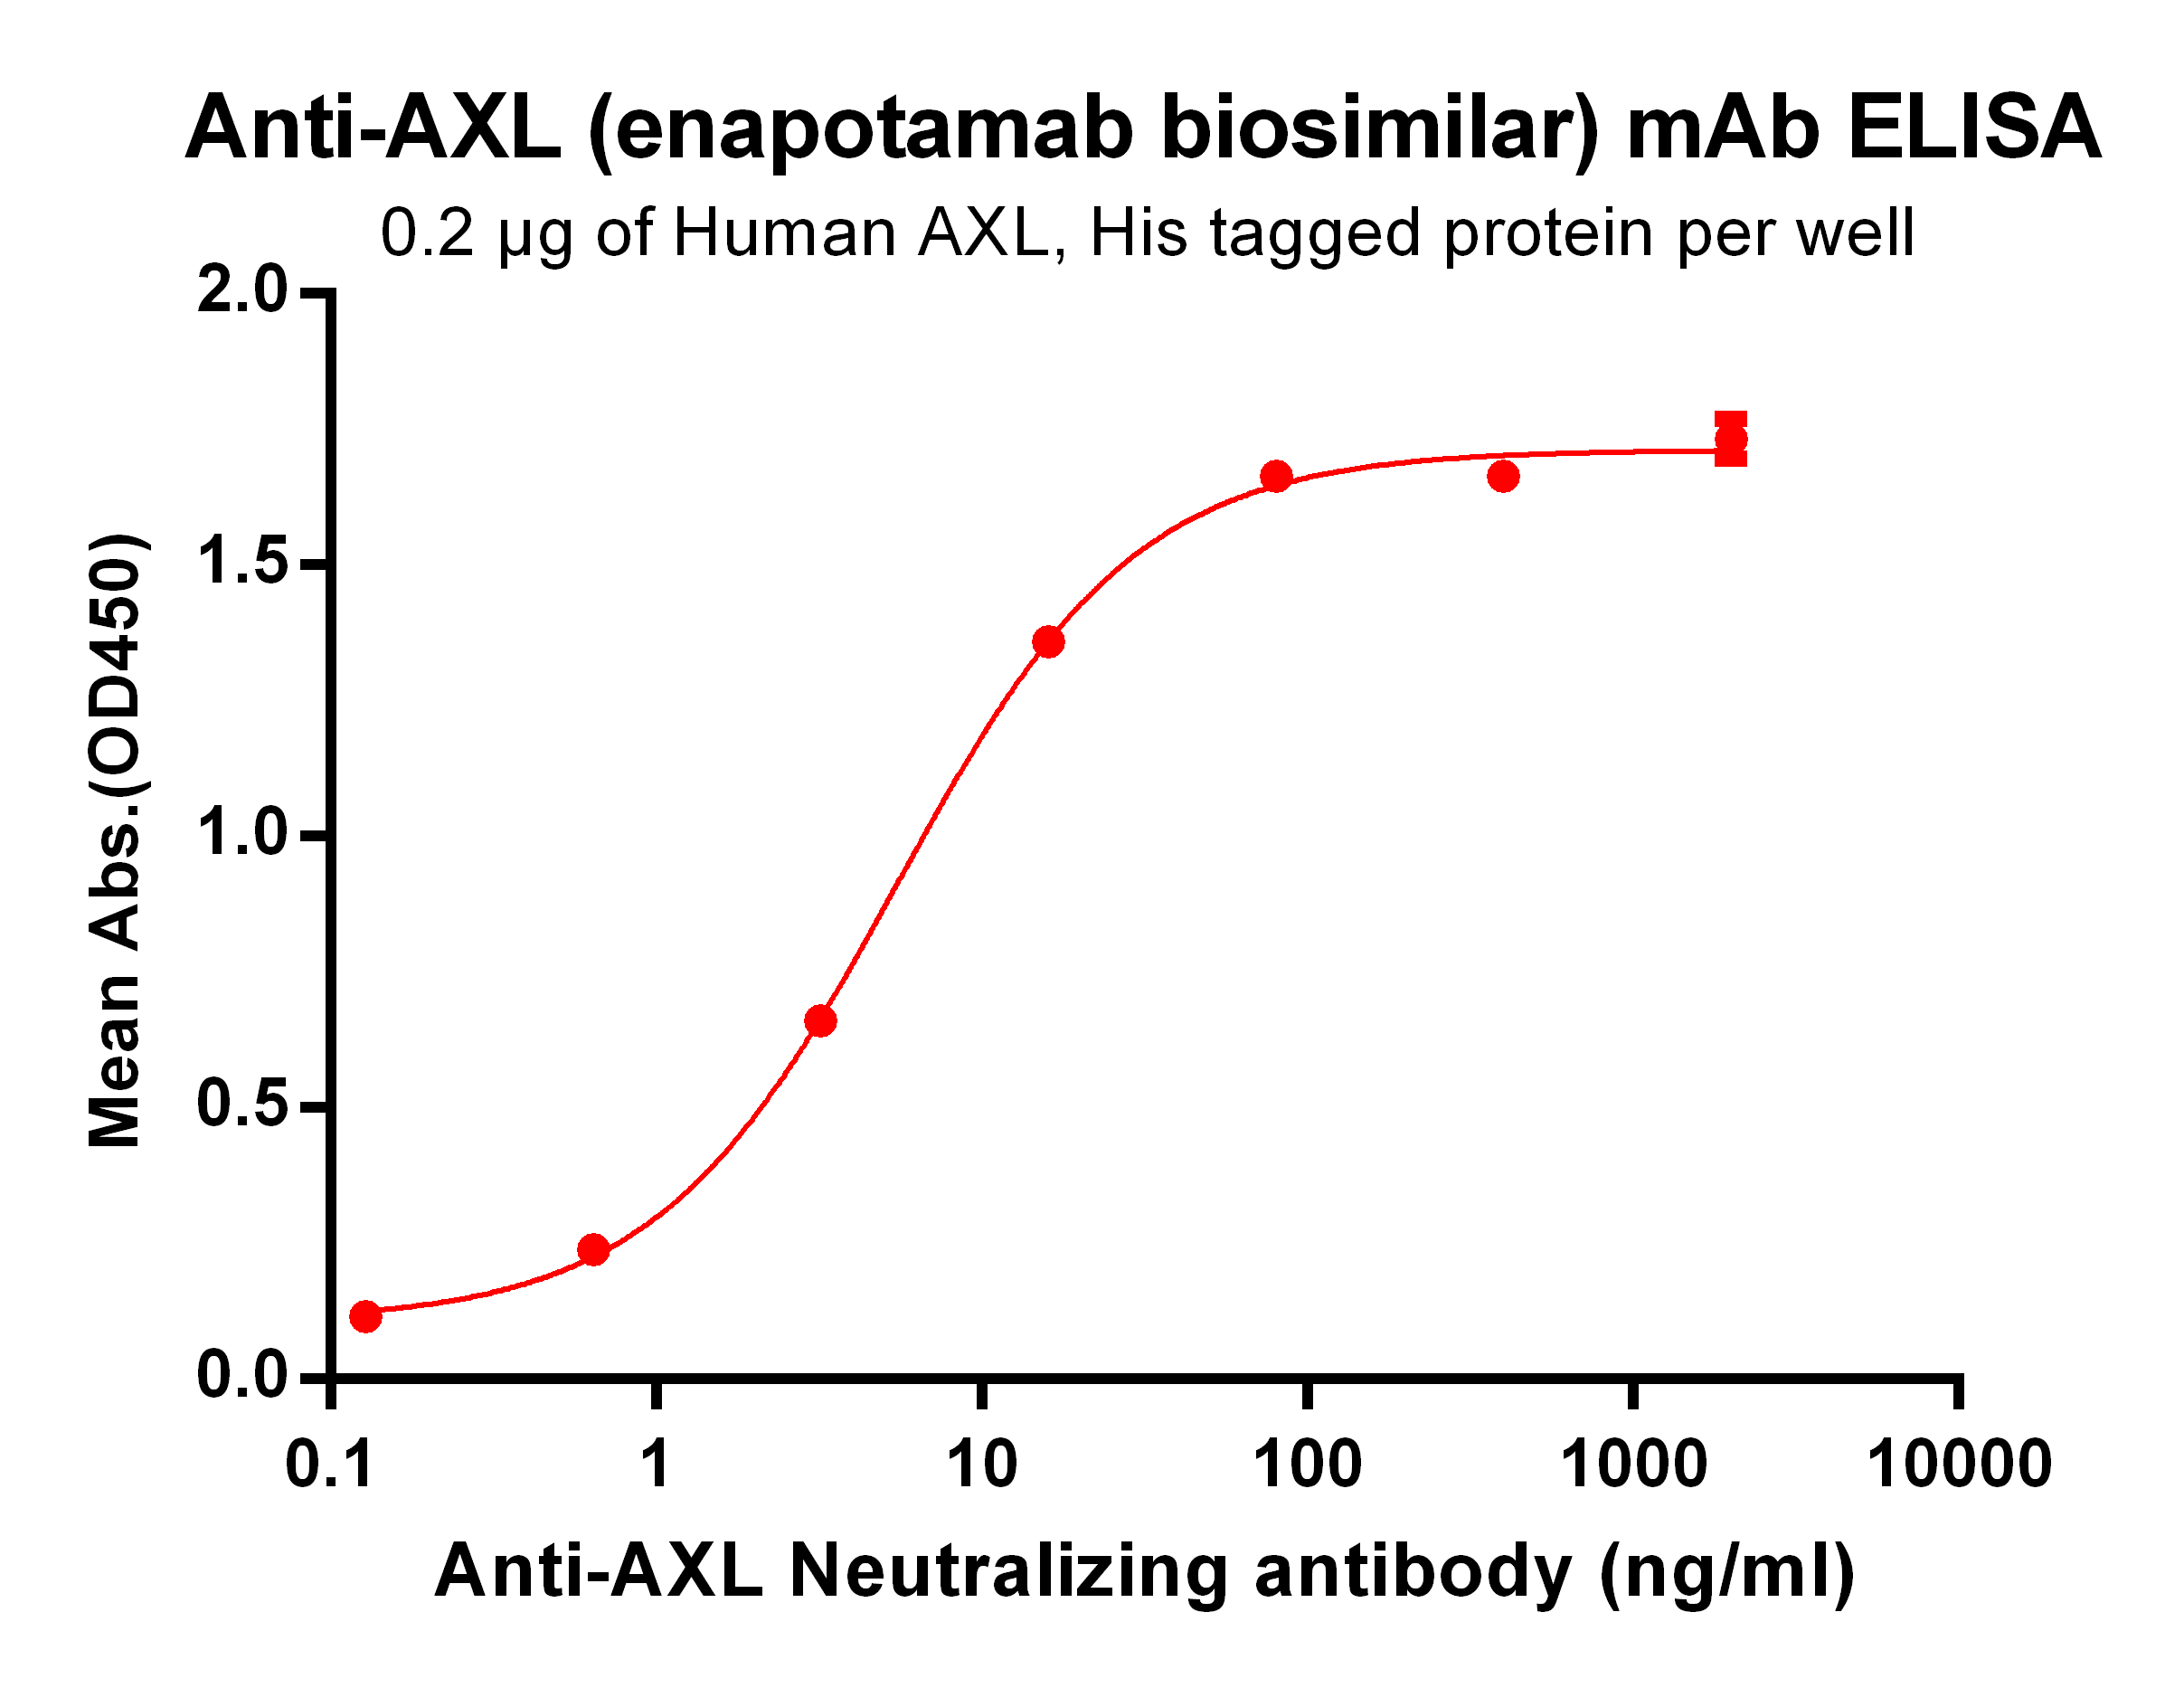 BME100033-Anti-AXL-enapotamab-biosimilar-mAb-Elisa-fig1.png